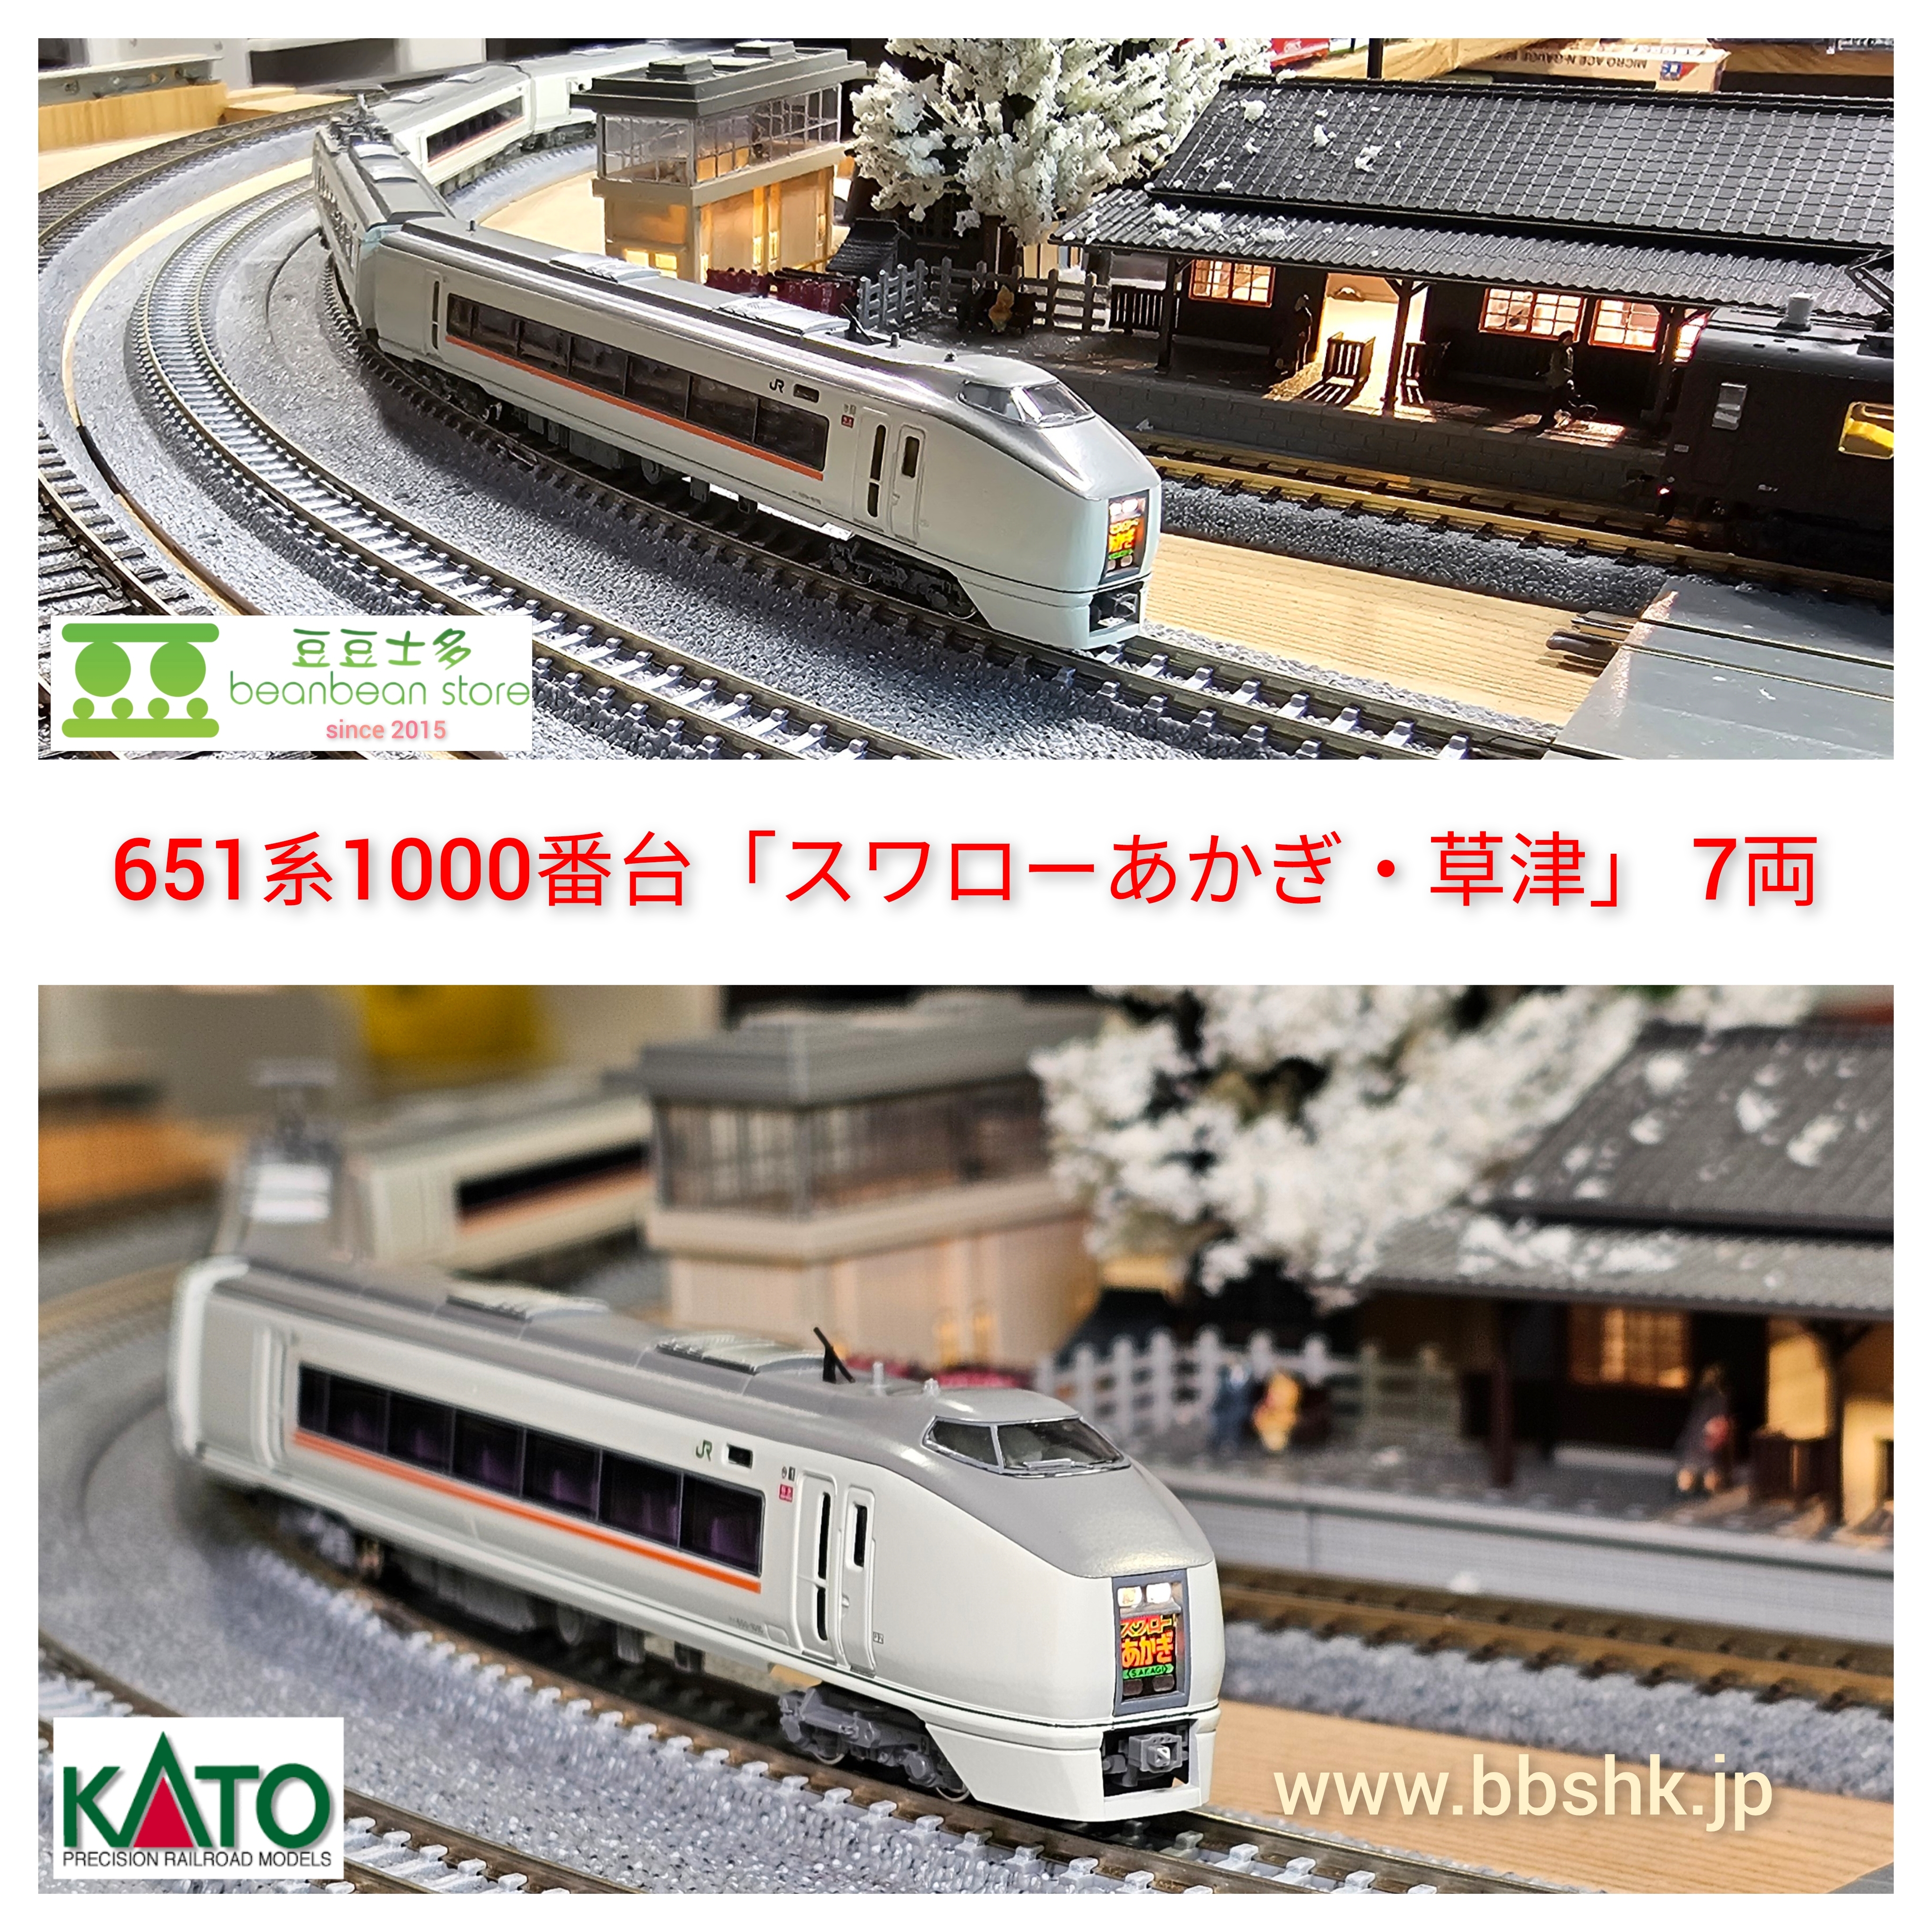 KATO 10-959 651系1000番台タイプ 「スワローあかぎ・草津」 7両